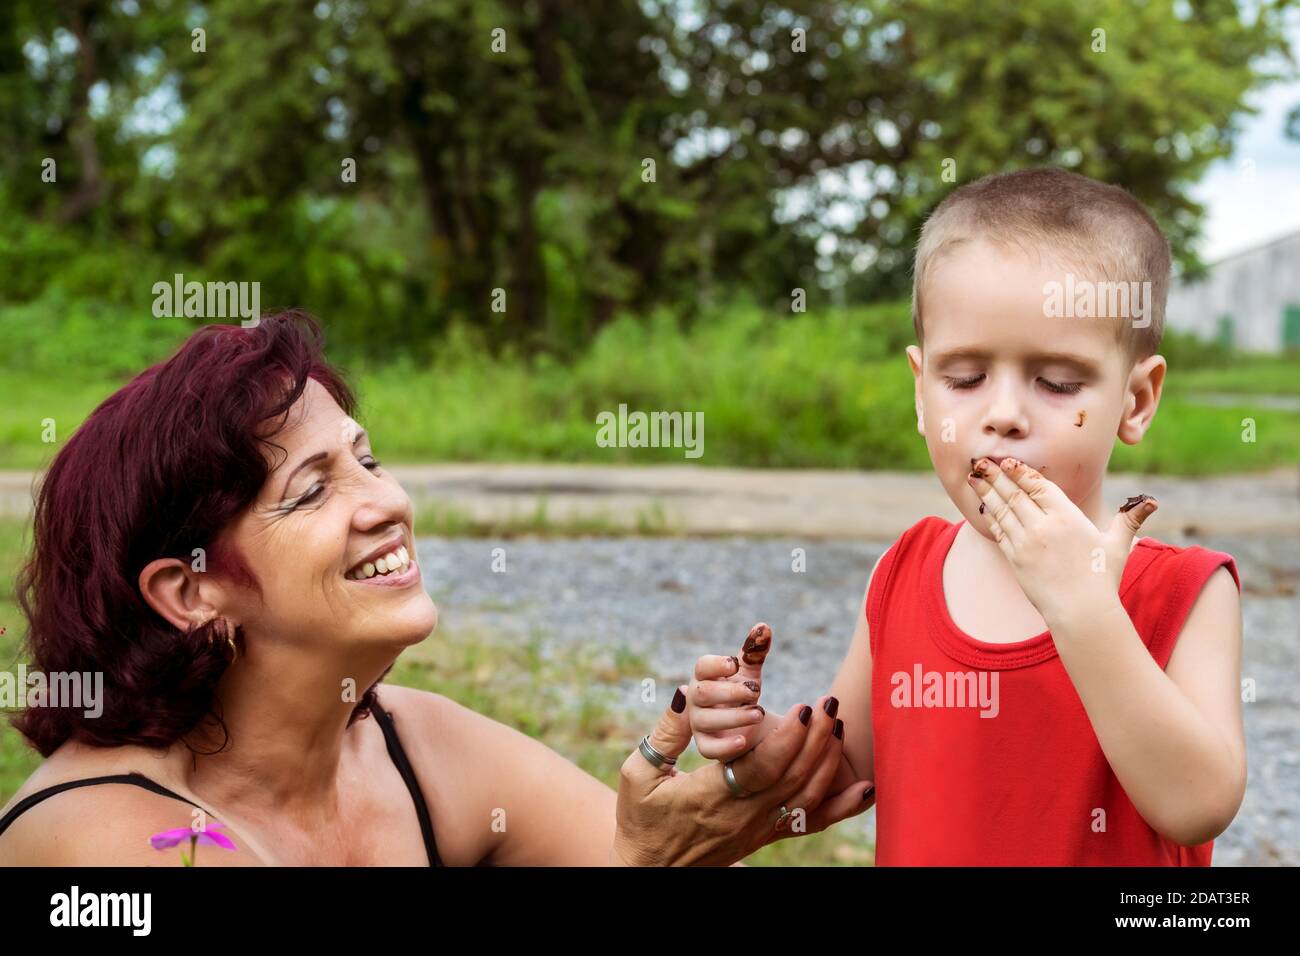 Ein Kind, das Schokolade direkt von seinen Fingern probiert, seine Großmutter ist direkt an seiner Seite und lächelt ihn an Stockfoto